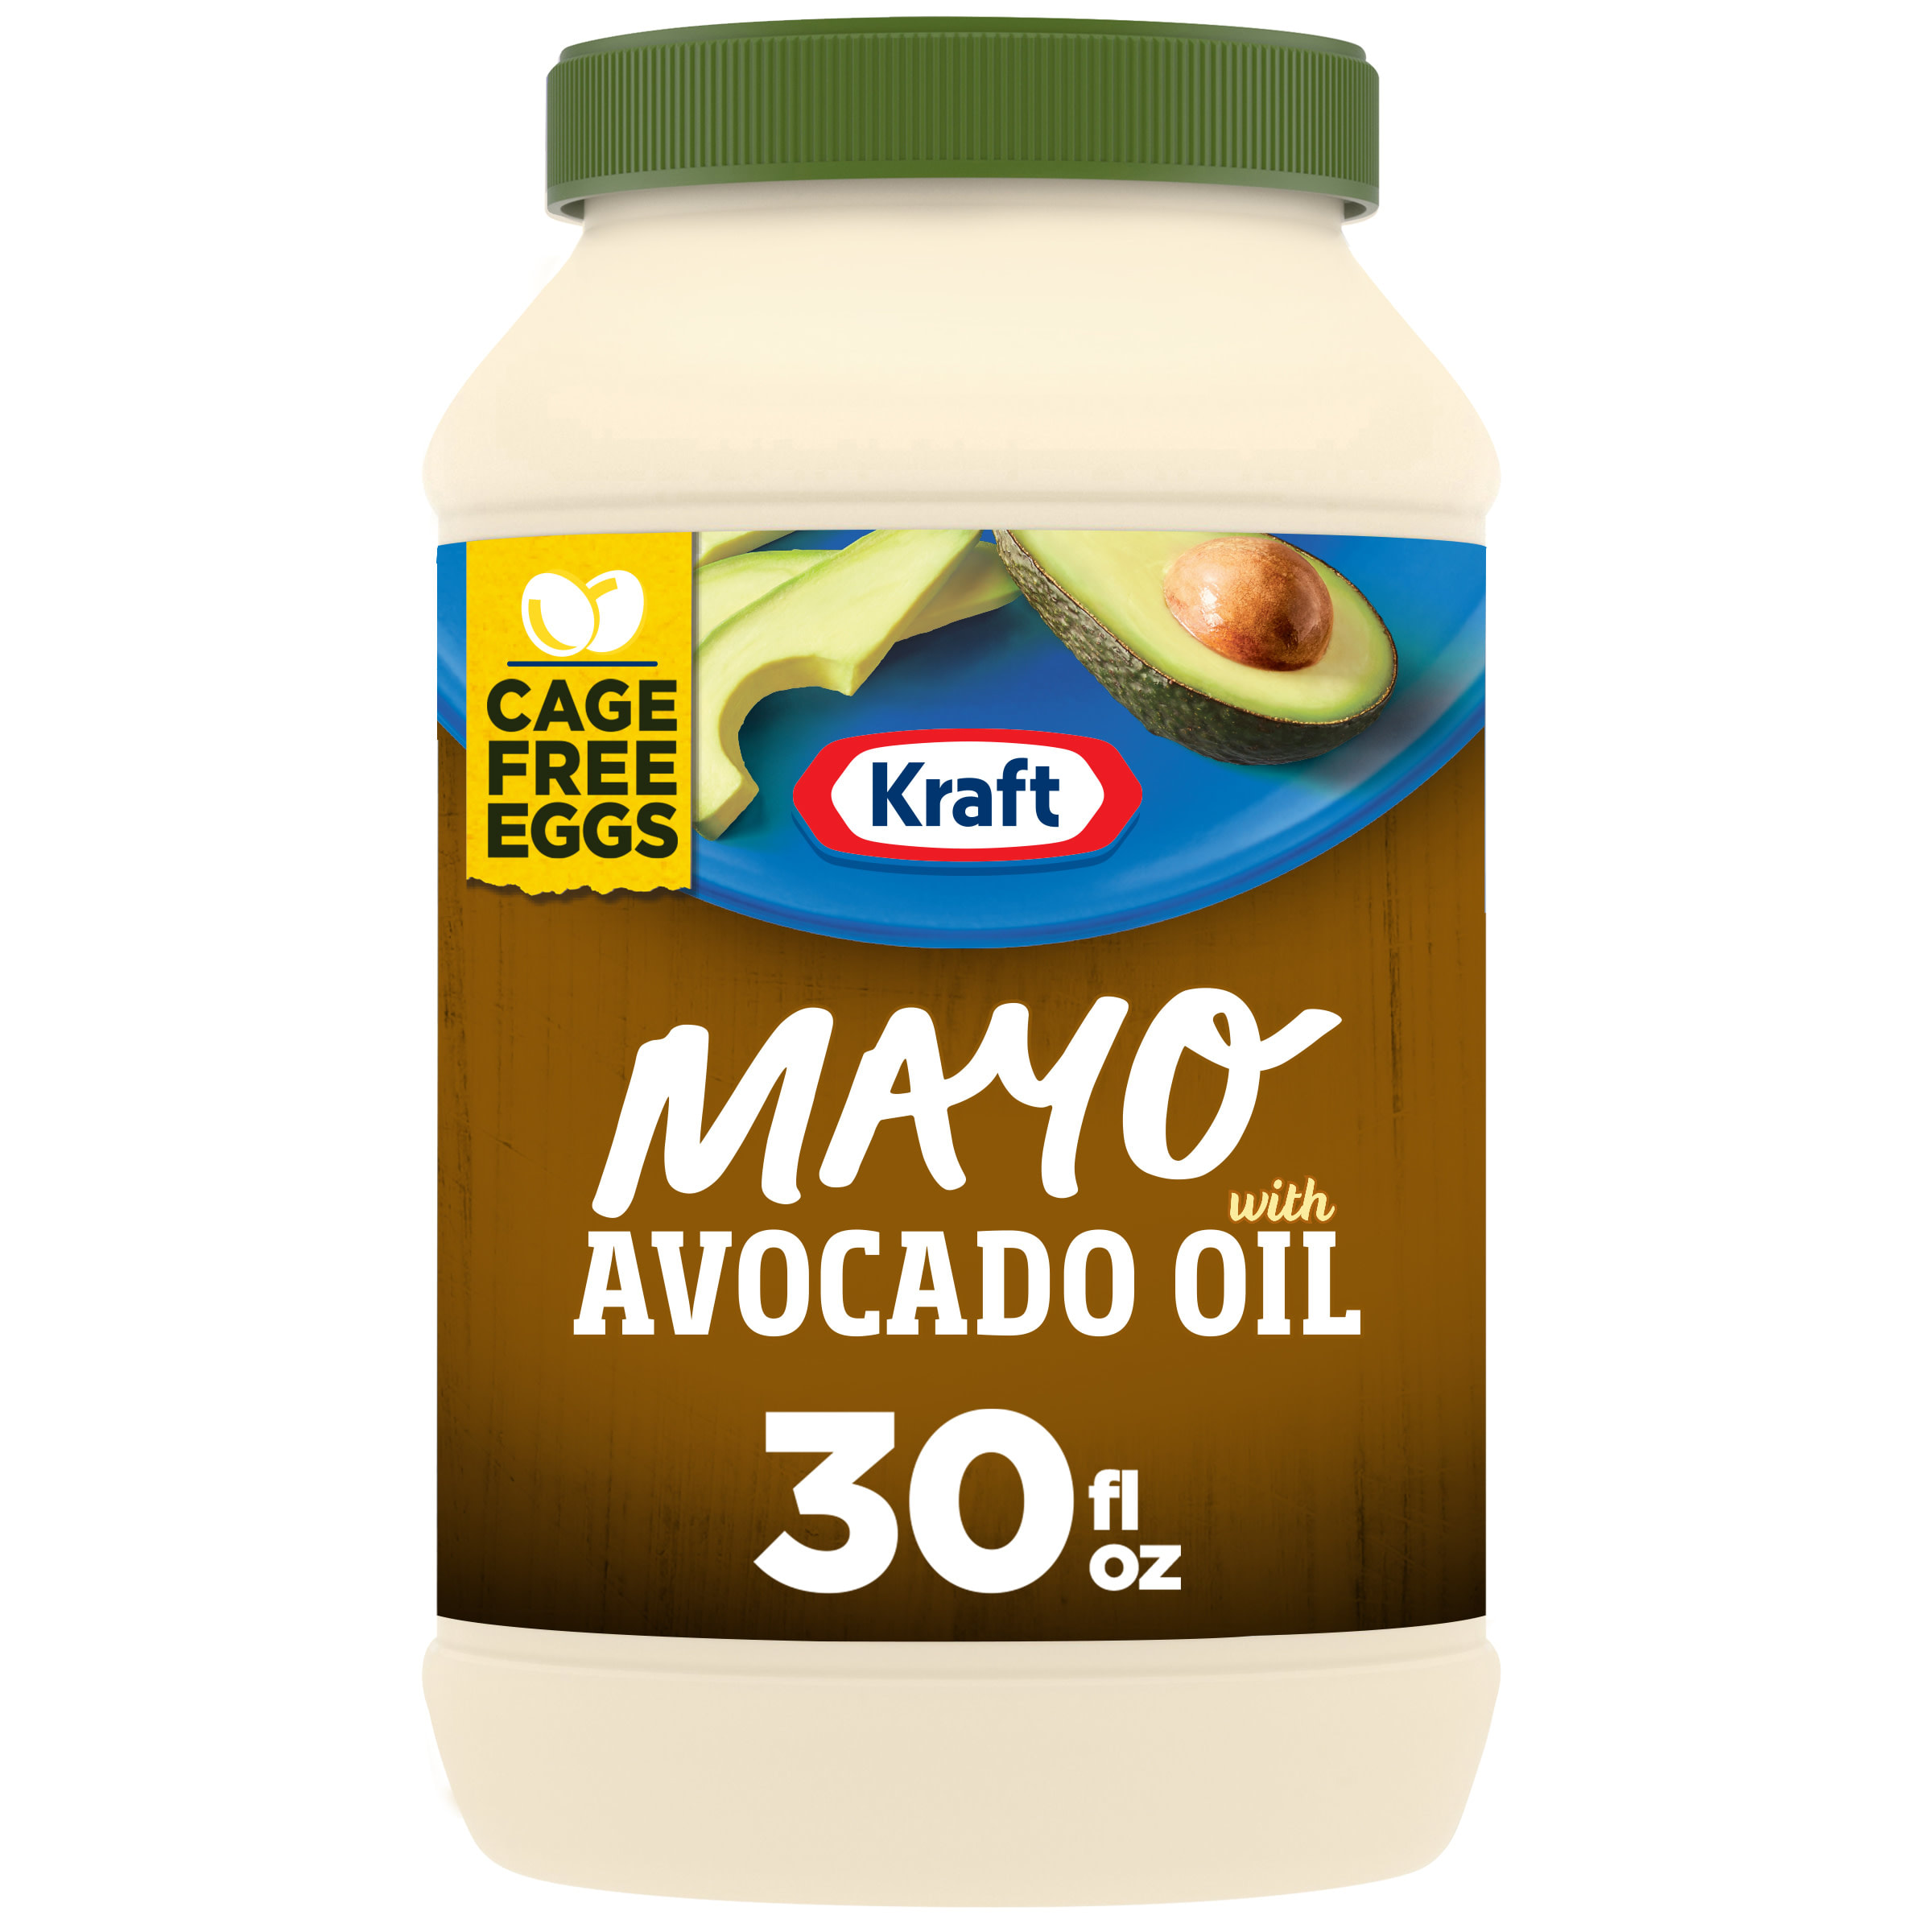 Kraft Real Mayo Creamy & Smooth Mayonnaise, 15 fl oz Jar